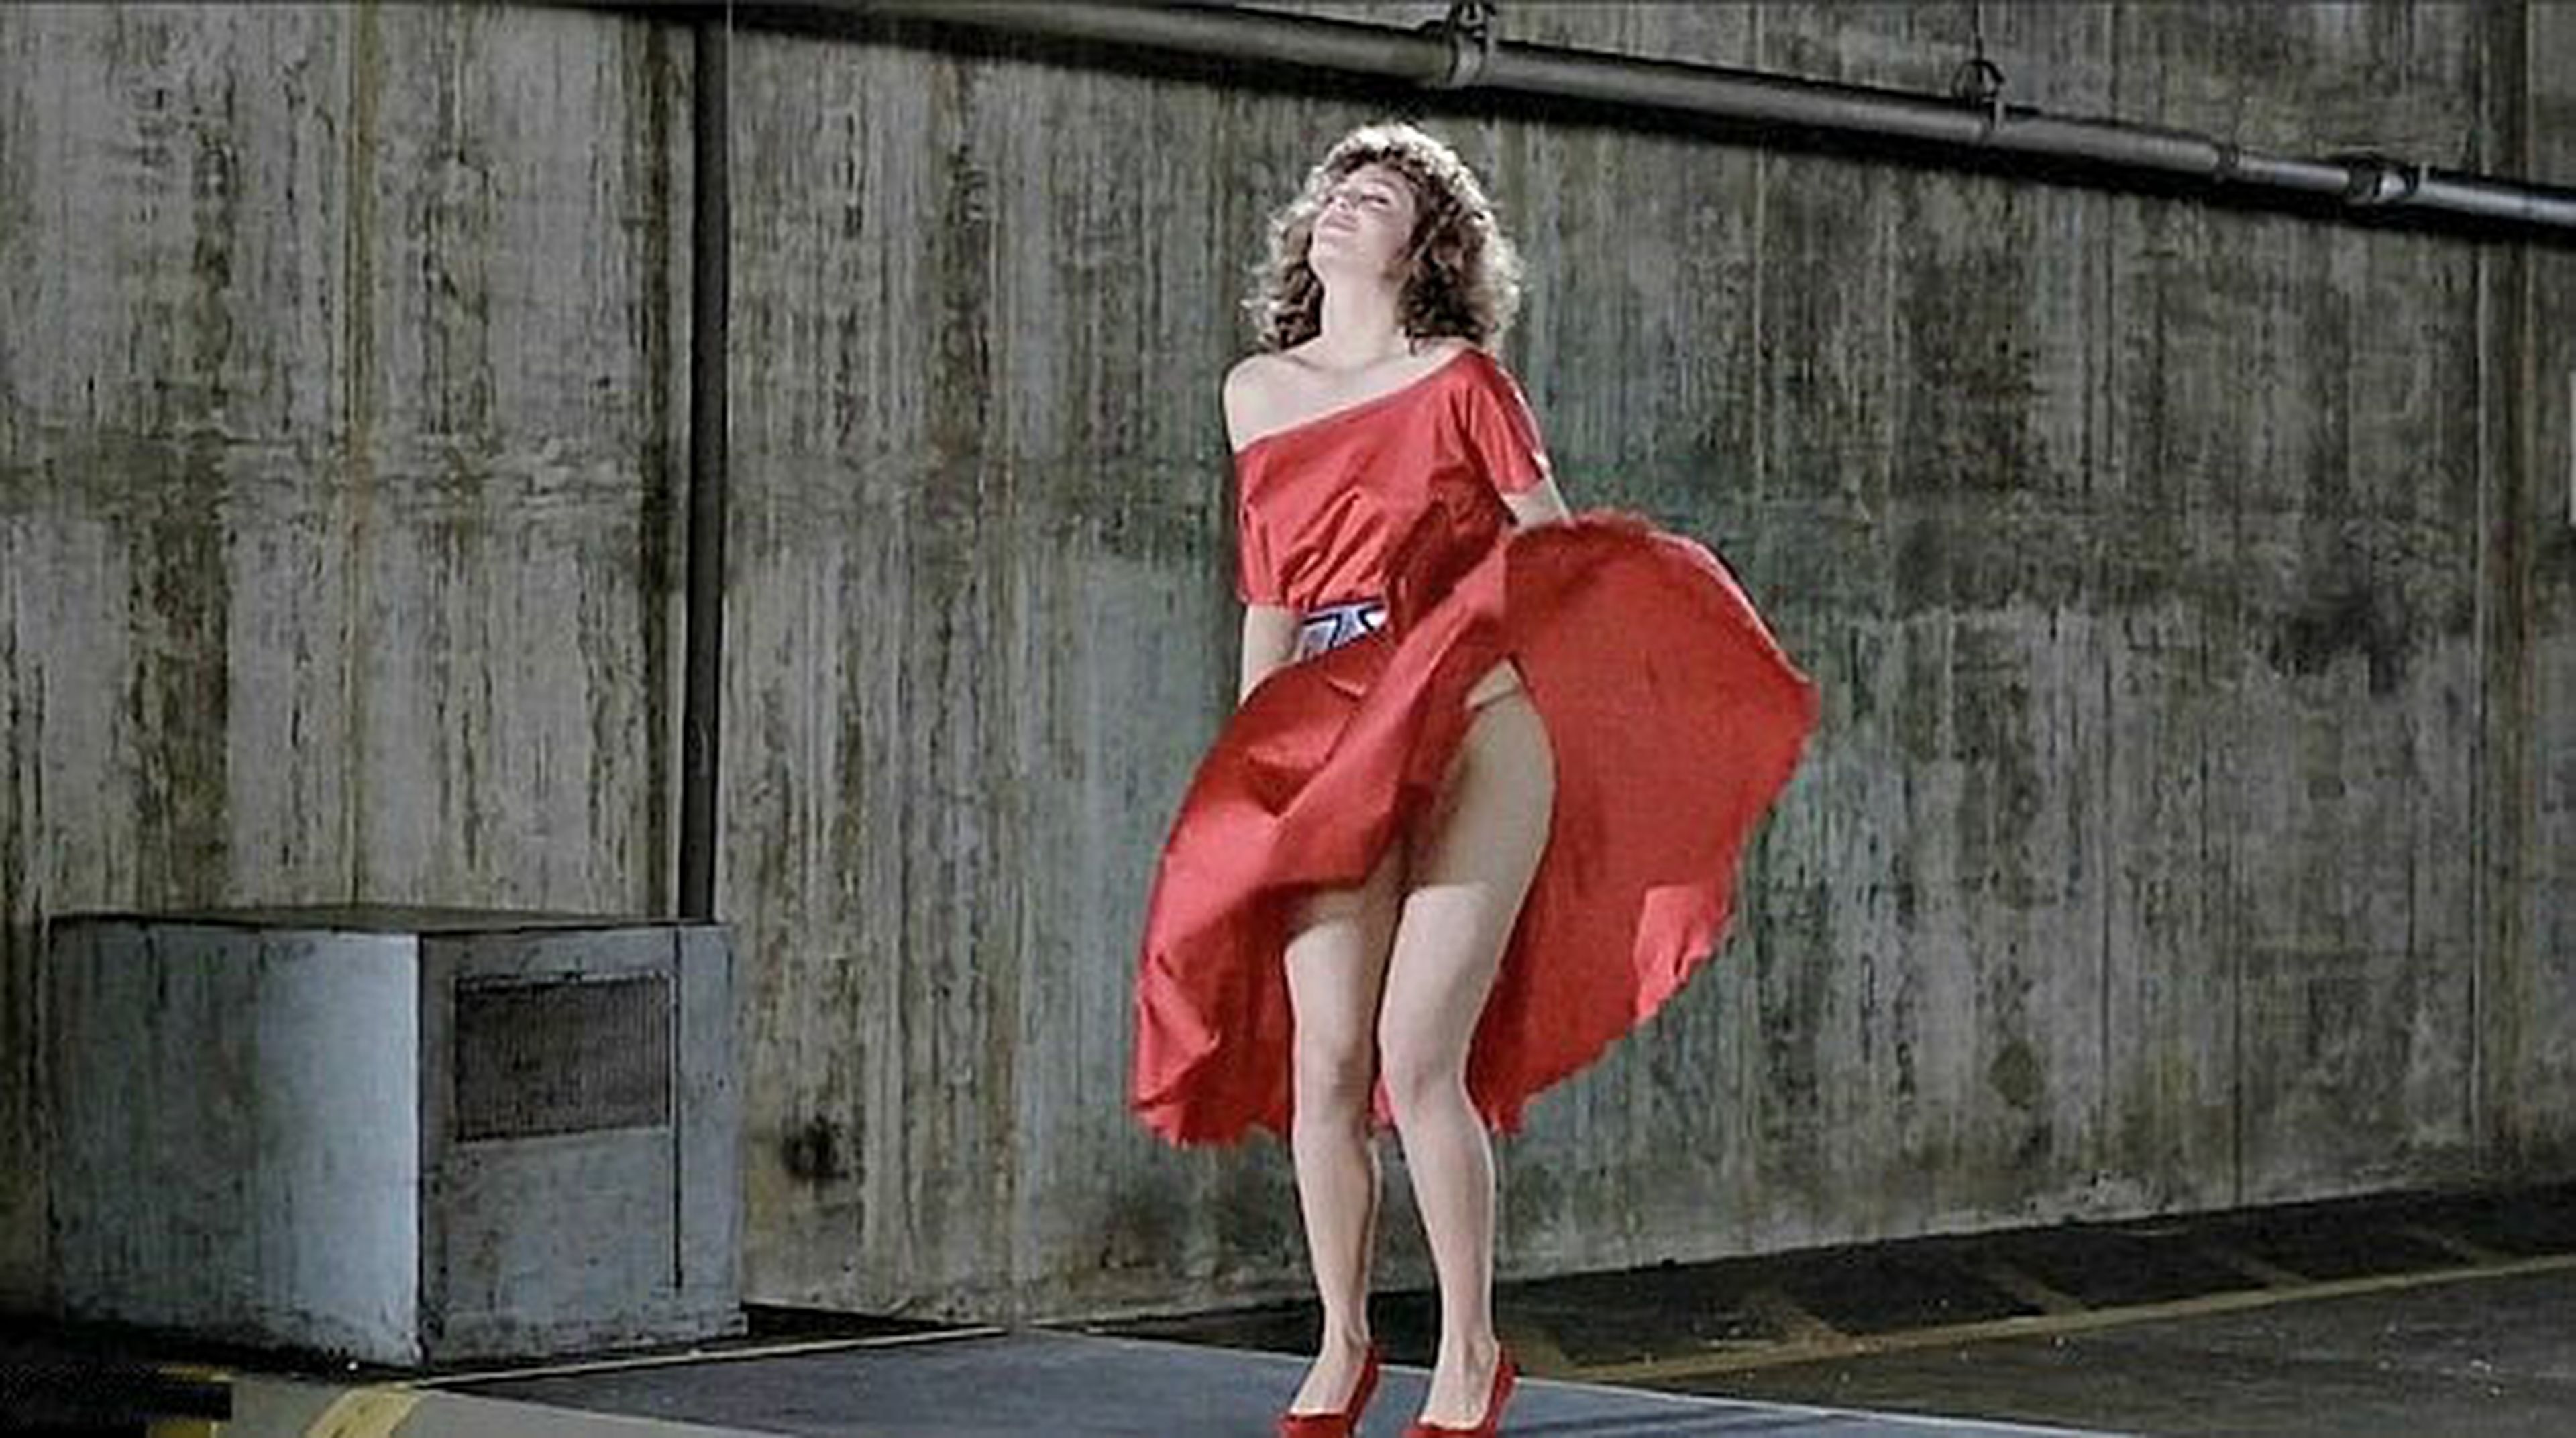 La Mujer de Rojo (1984)